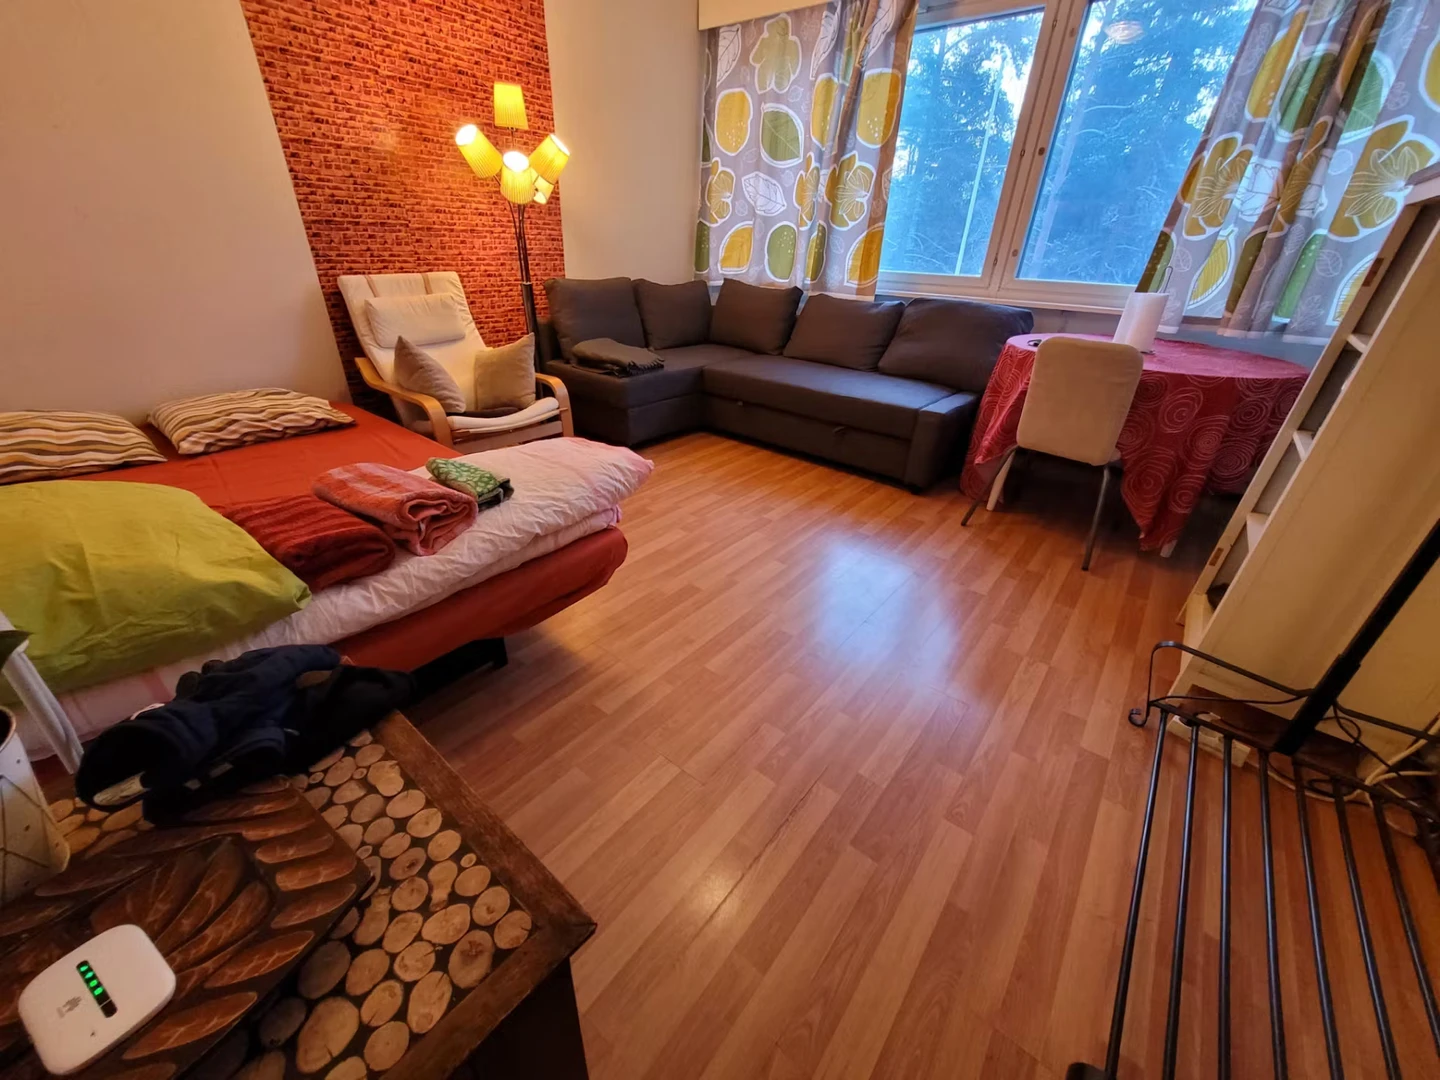 Zakwaterowanie z 3 sypialniami w Espoo